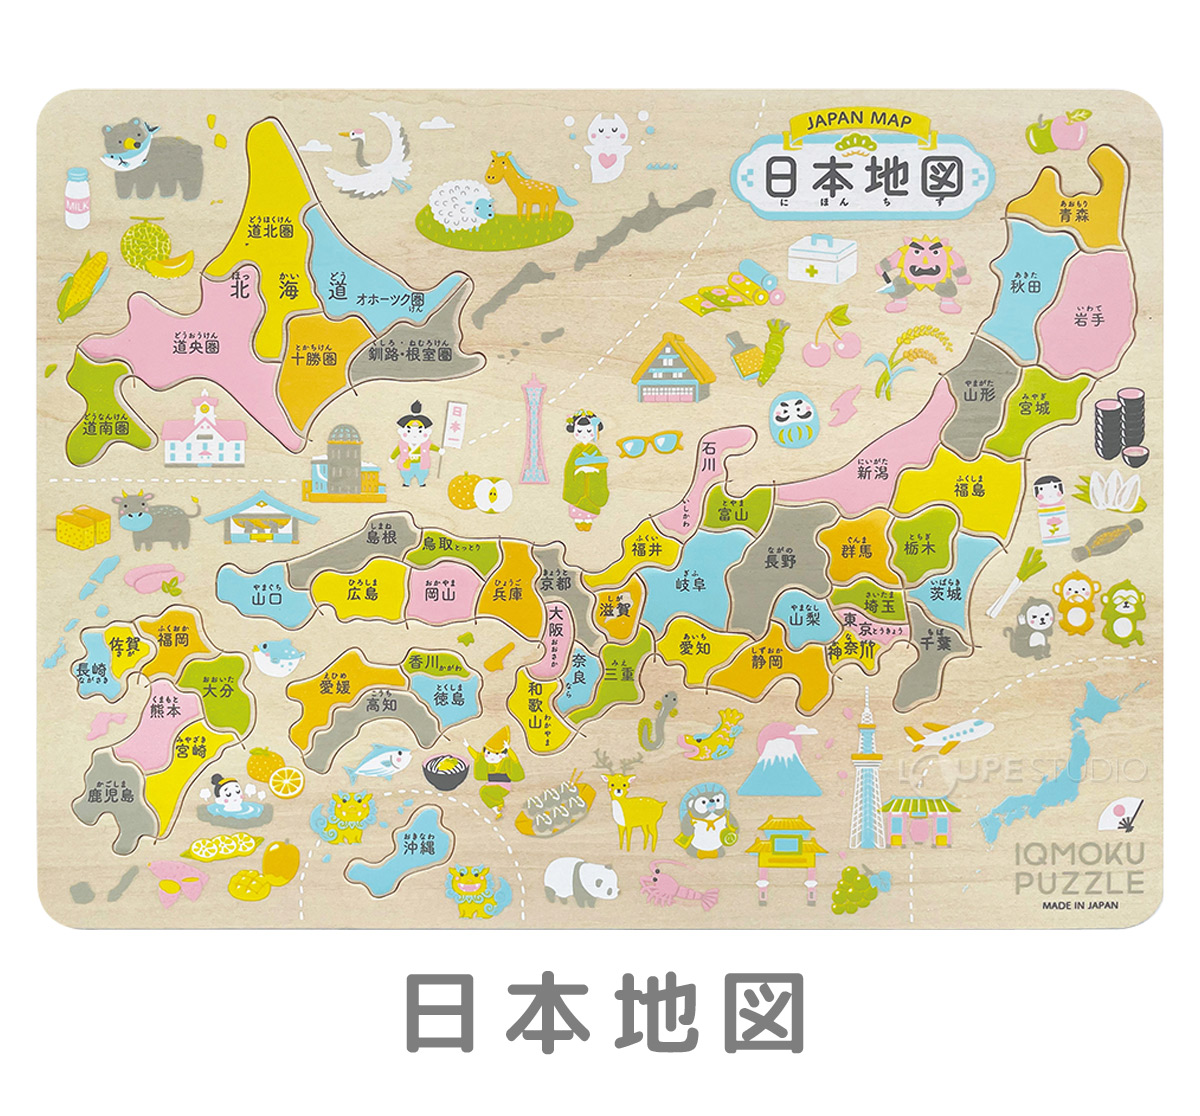 パズル 子供 日本地図 ひらがな 日本製 小学生 6歳 7歳 低学年 保育園 収納 社会 人気 知育 玩具 教材 木製 おもちゃ 家庭学習 自宅学習  :dbk-0107:ルーペスタジオ 通販 